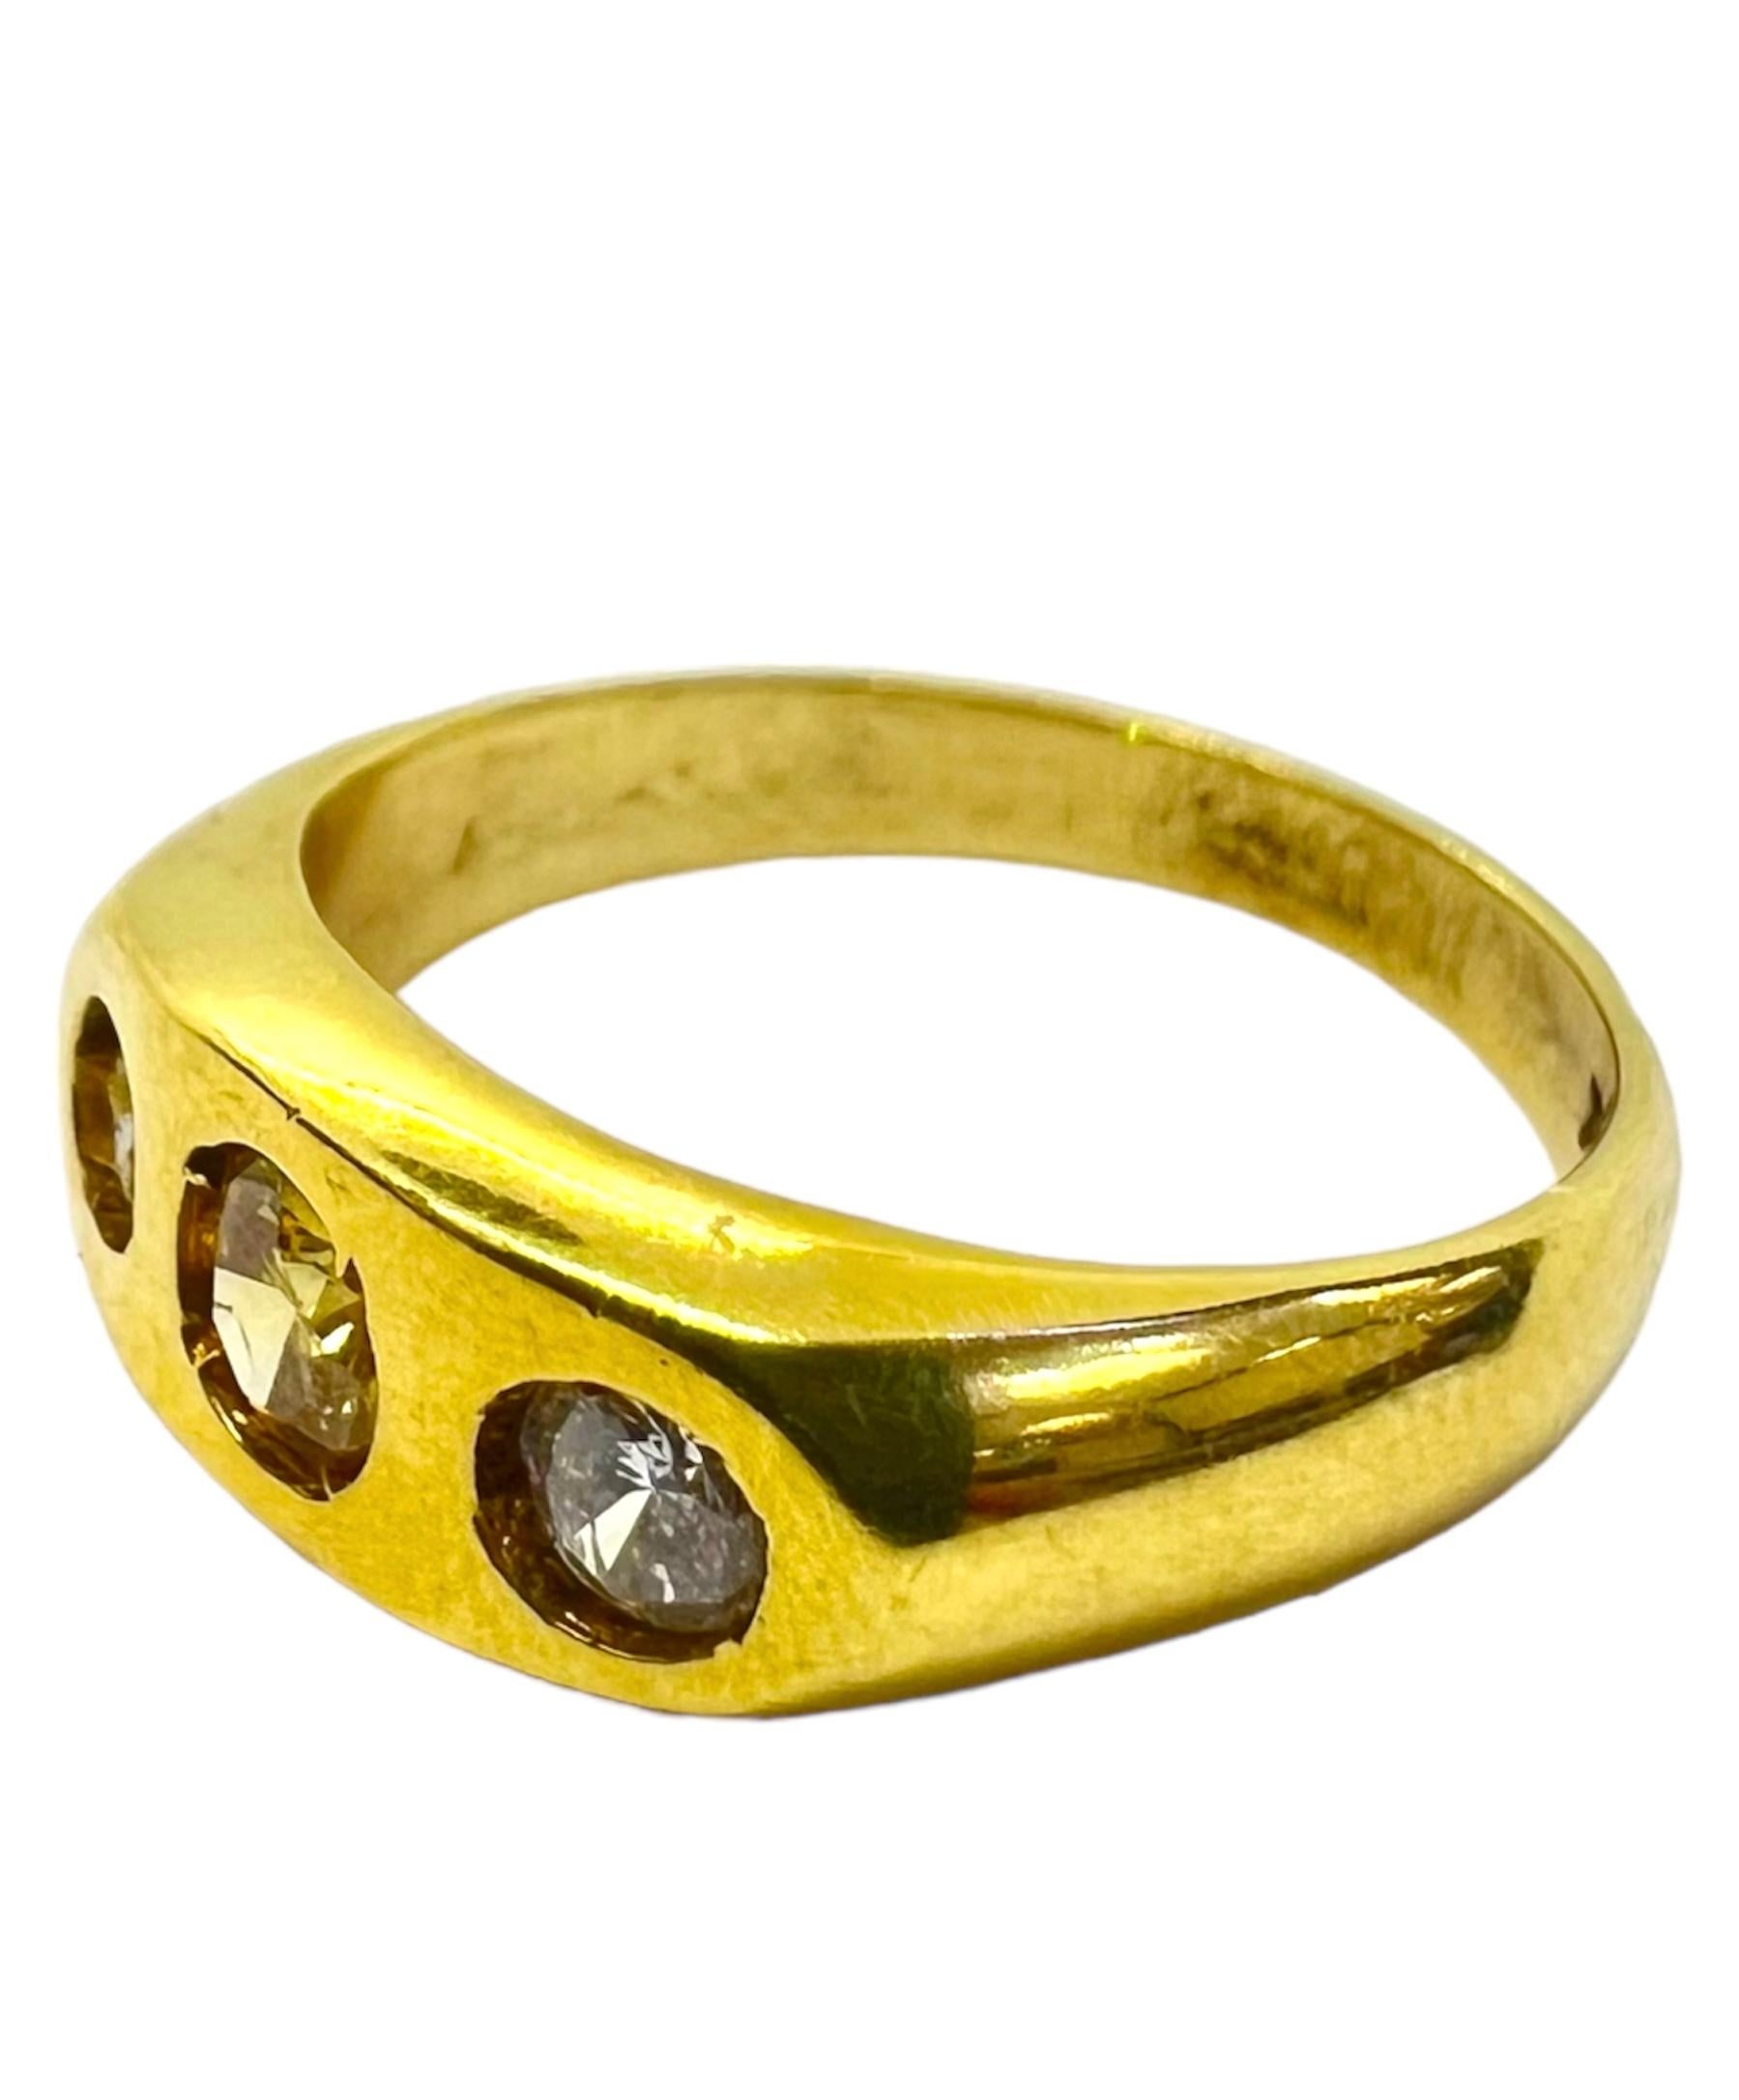 Ring aus 18 Karat Gelbgold mit weißen Diamanten und gelben Diamanten.

Sophia D von Joseph Dardashti LTD ist seit 35 Jahren weltweit bekannt und lässt sich vom klassischen Art-Déco-Design inspirieren, das mit modernen Fertigungstechniken